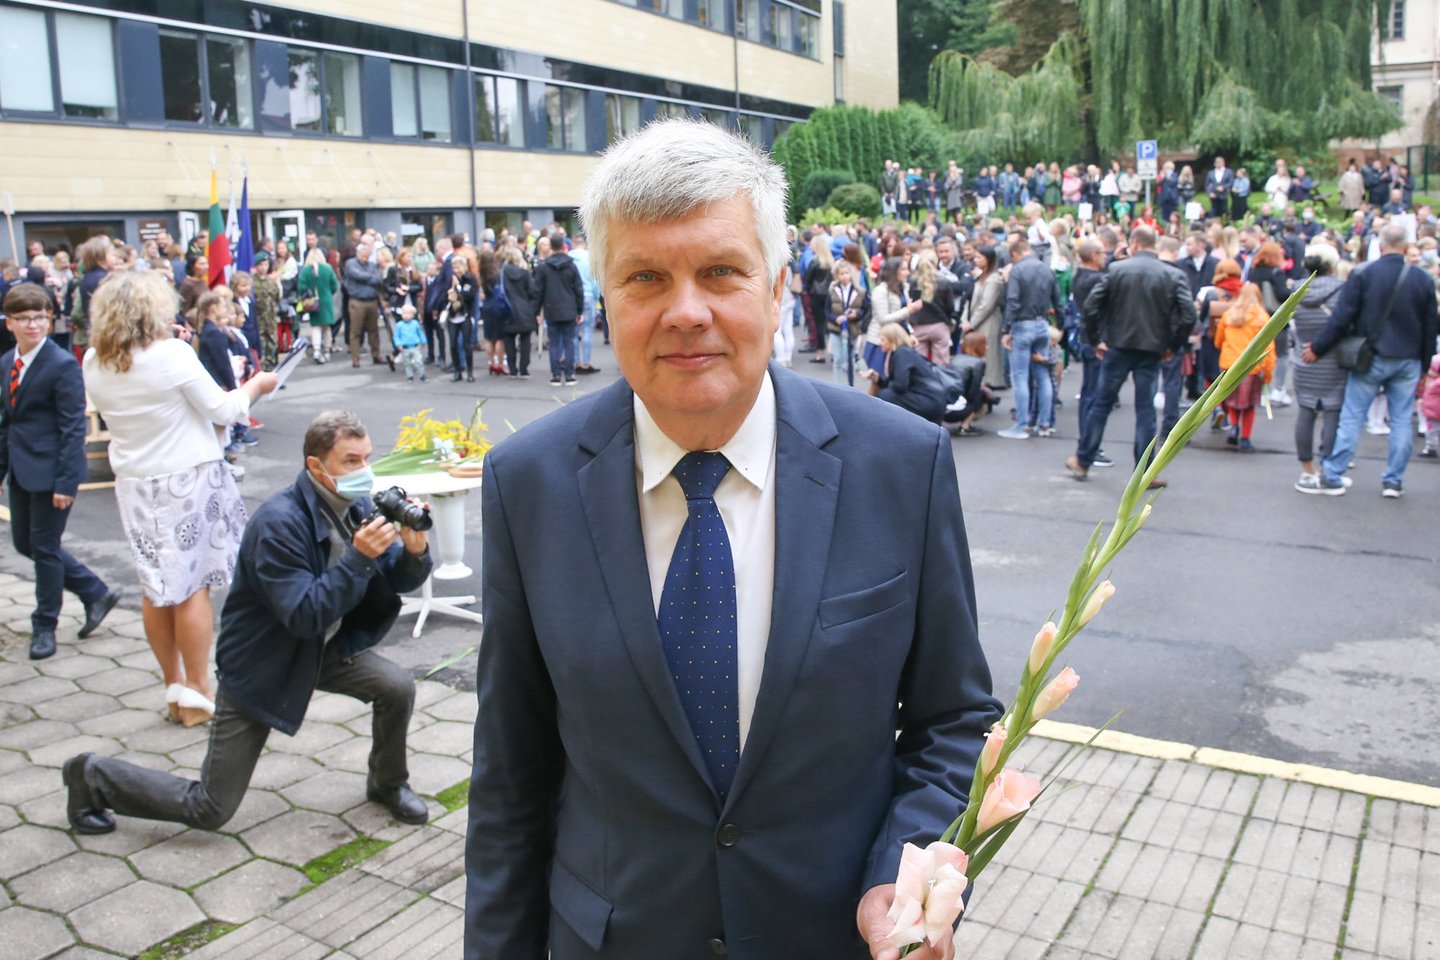  Vilniaus Antano Vienuolio progimnazijos vadovas K. Subačius.<br> R.Danisevičiaus nuotr.